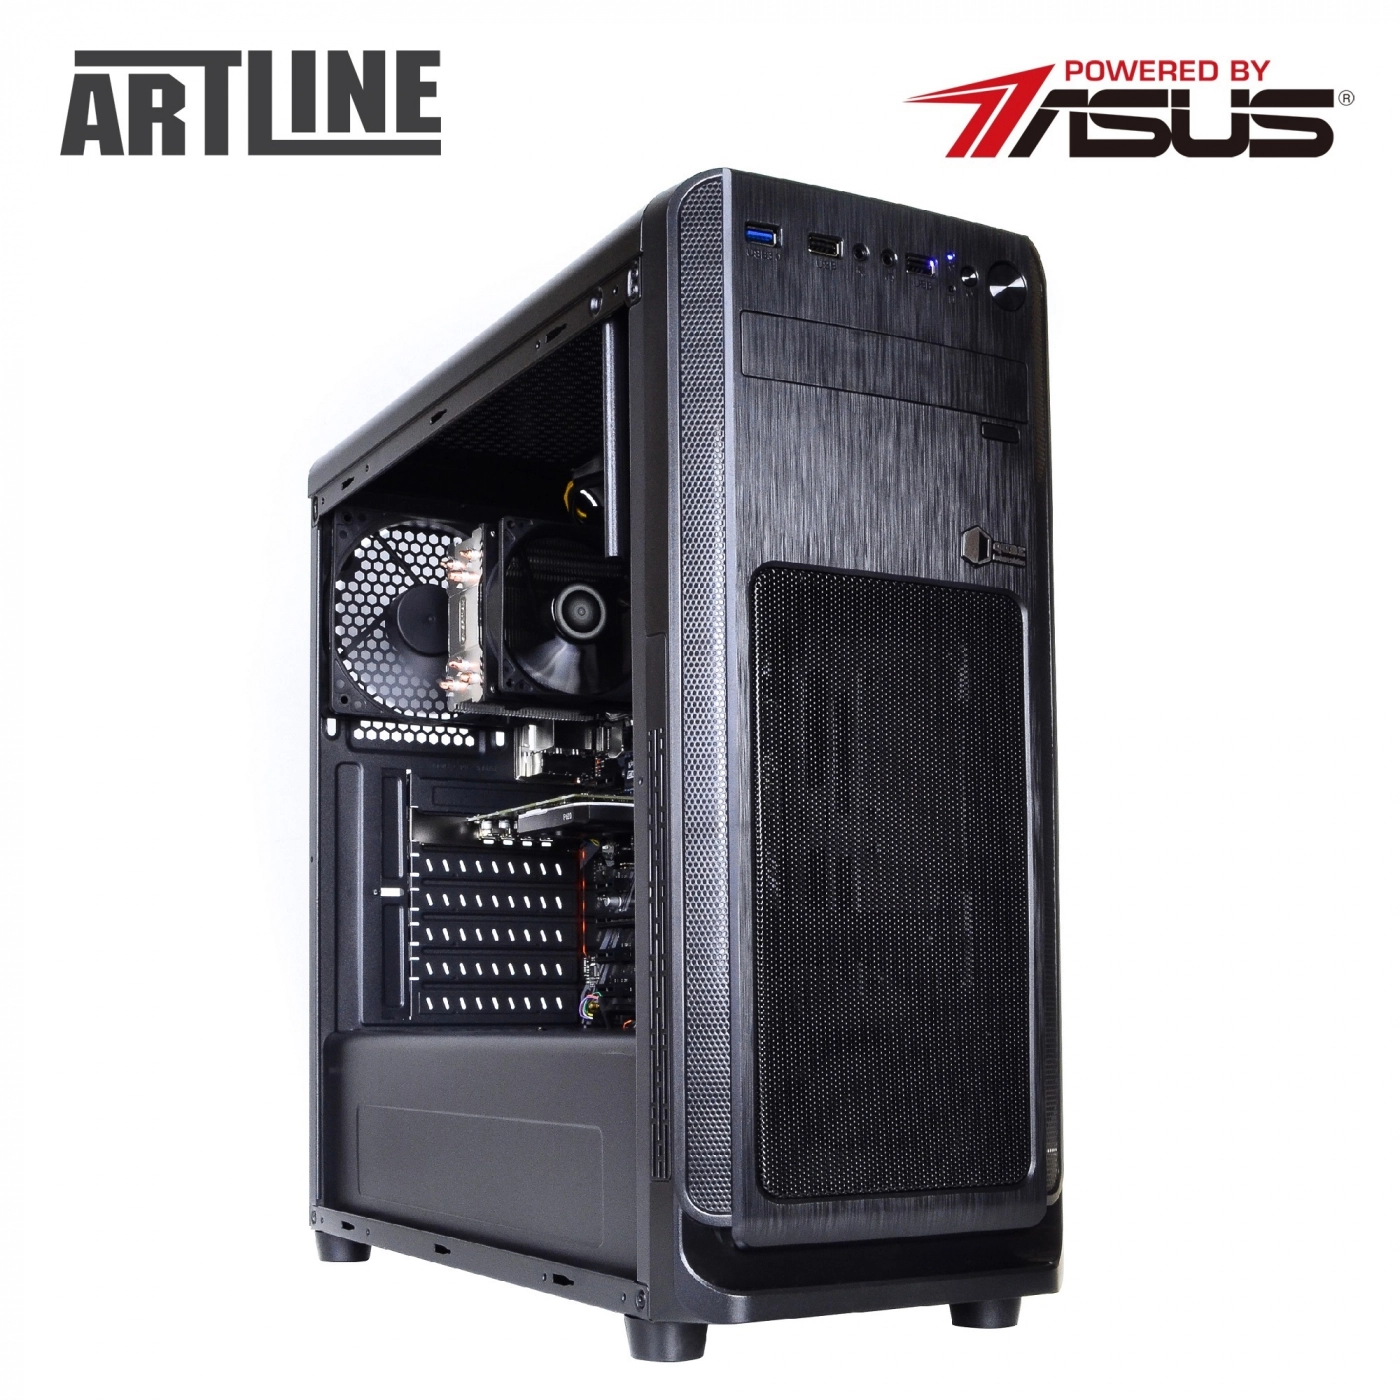 Купить Сервер ARTLINE Business T65v08 - фото 12